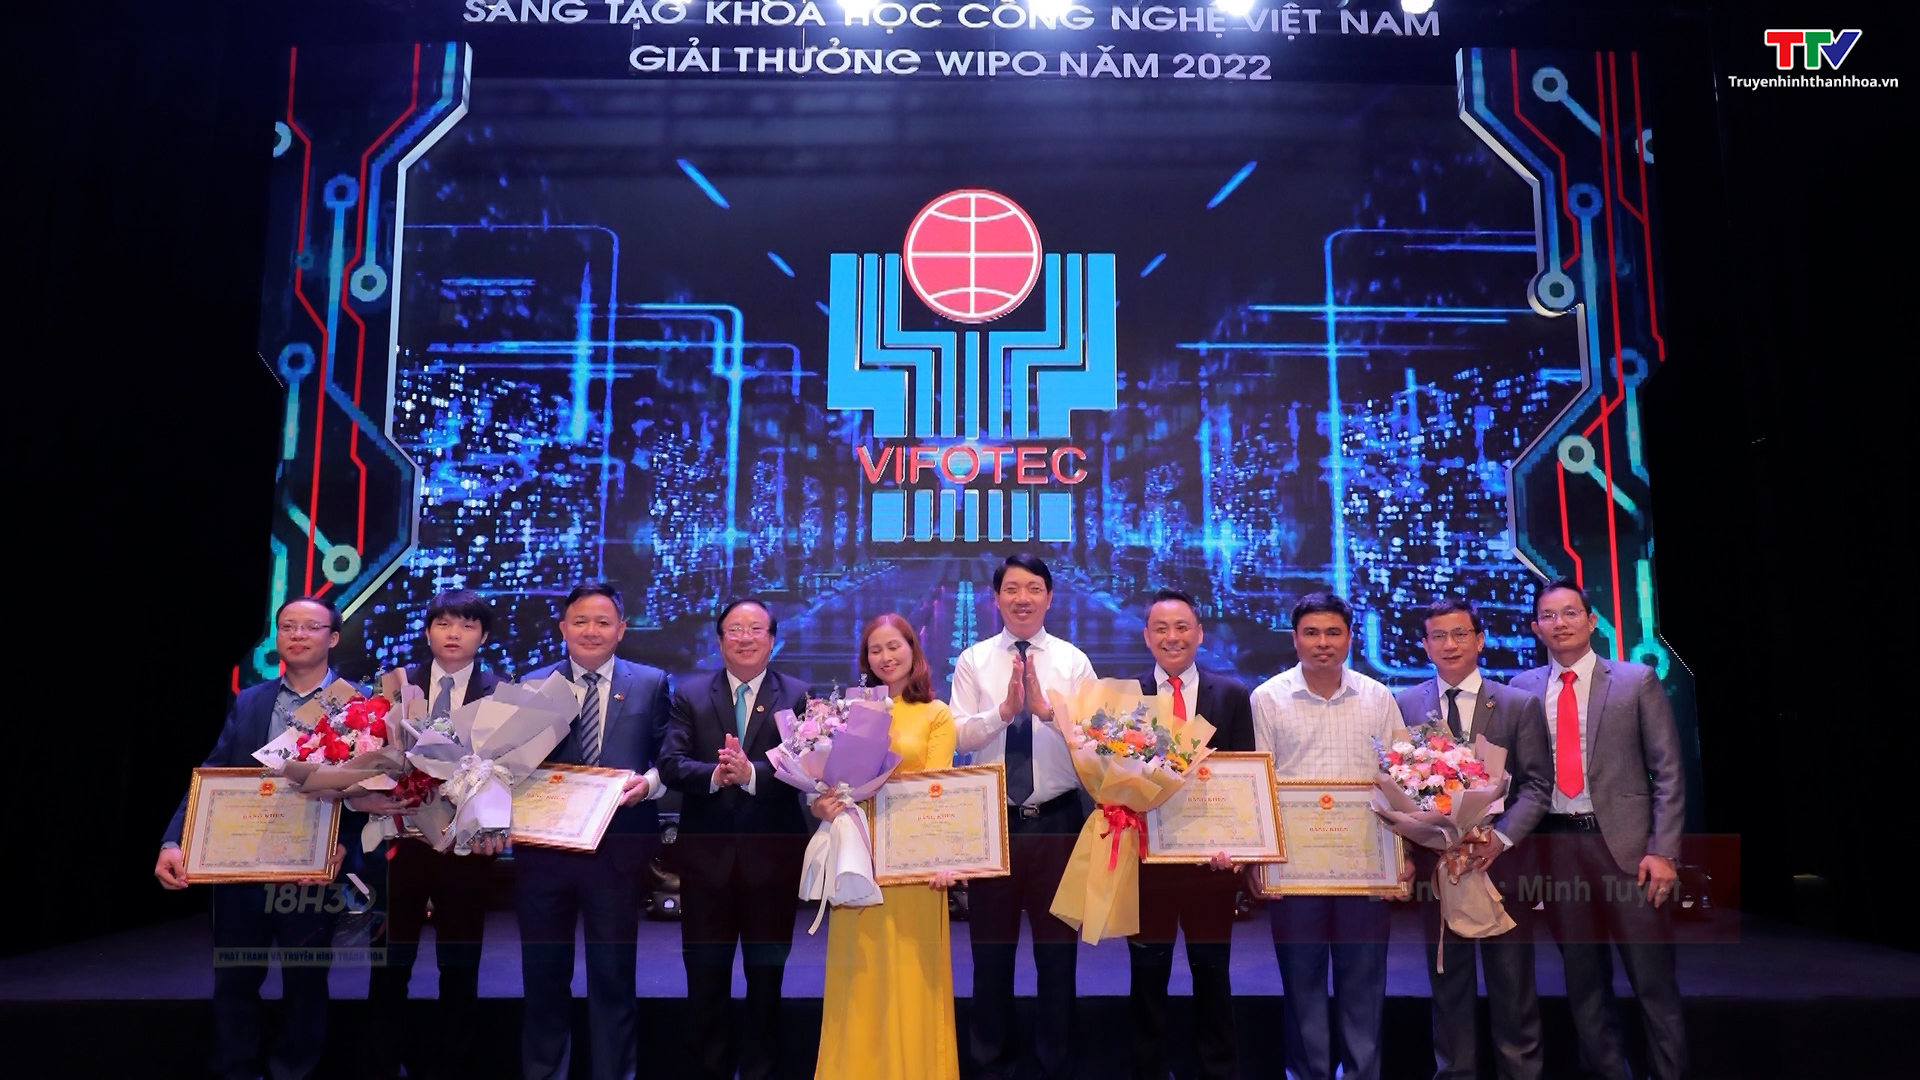 Thanh Hóa 4 công trình đạt giải thưởng Sáng tạo khoa học công nghệ Việt Nam - Ảnh 2.